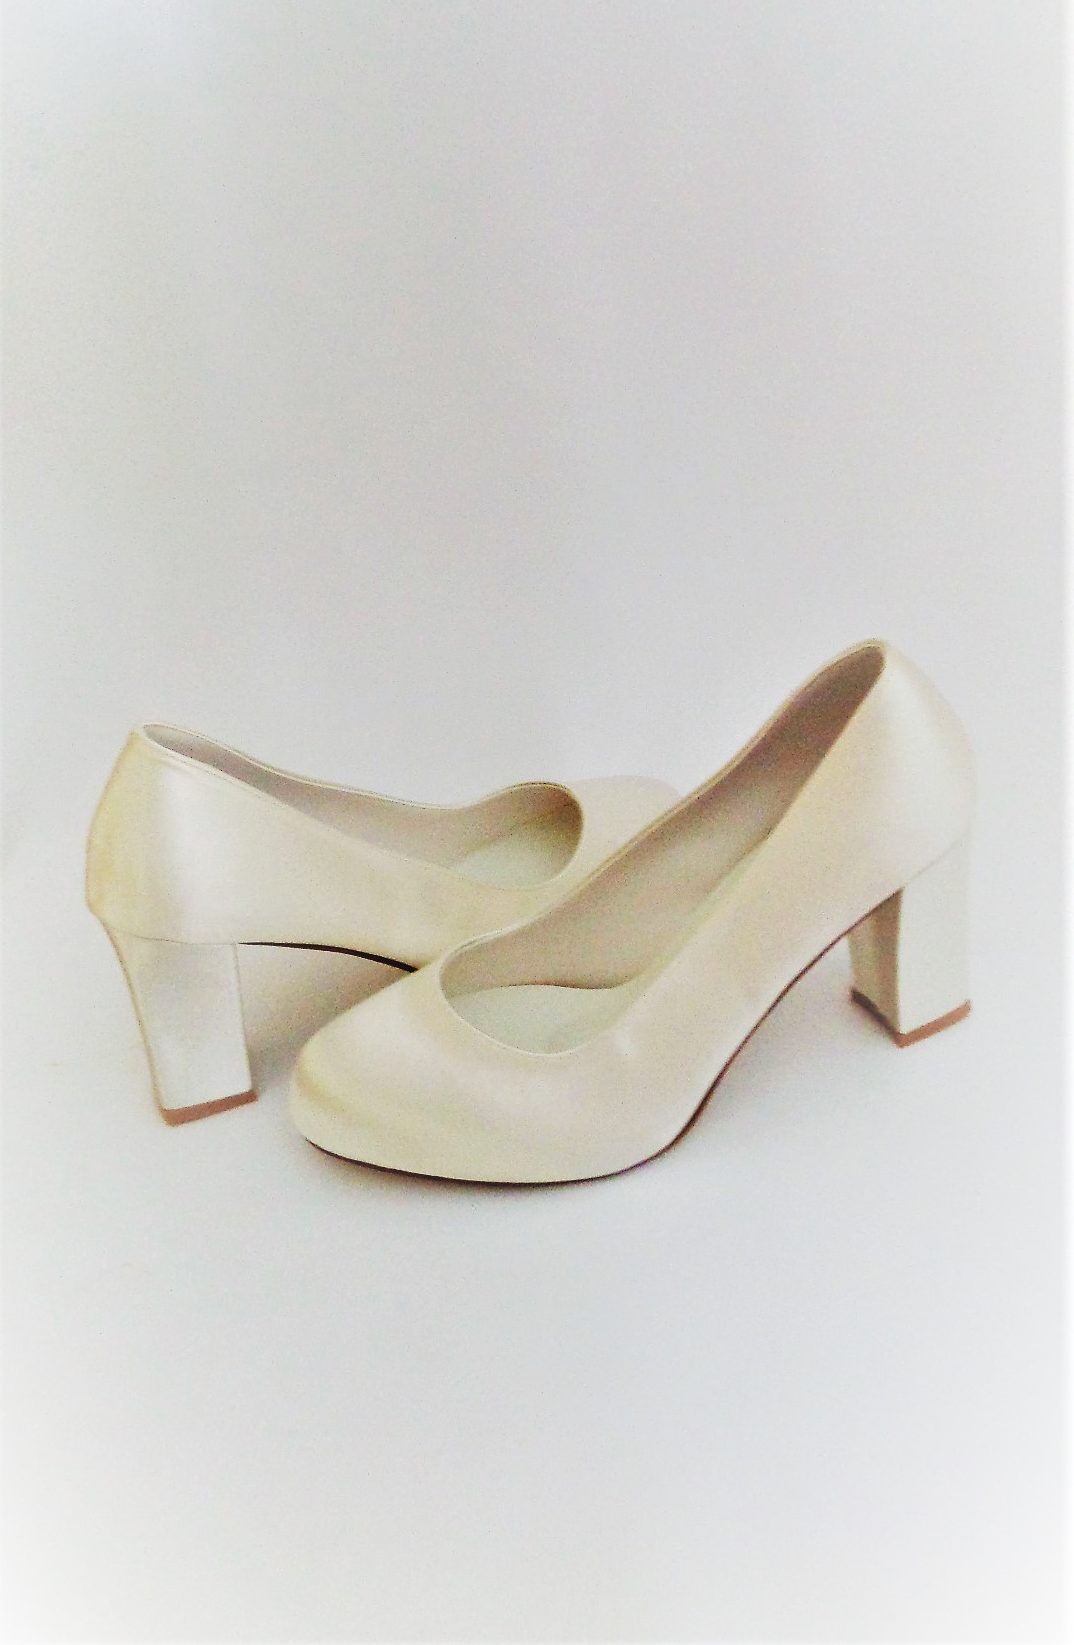 white satin shoes